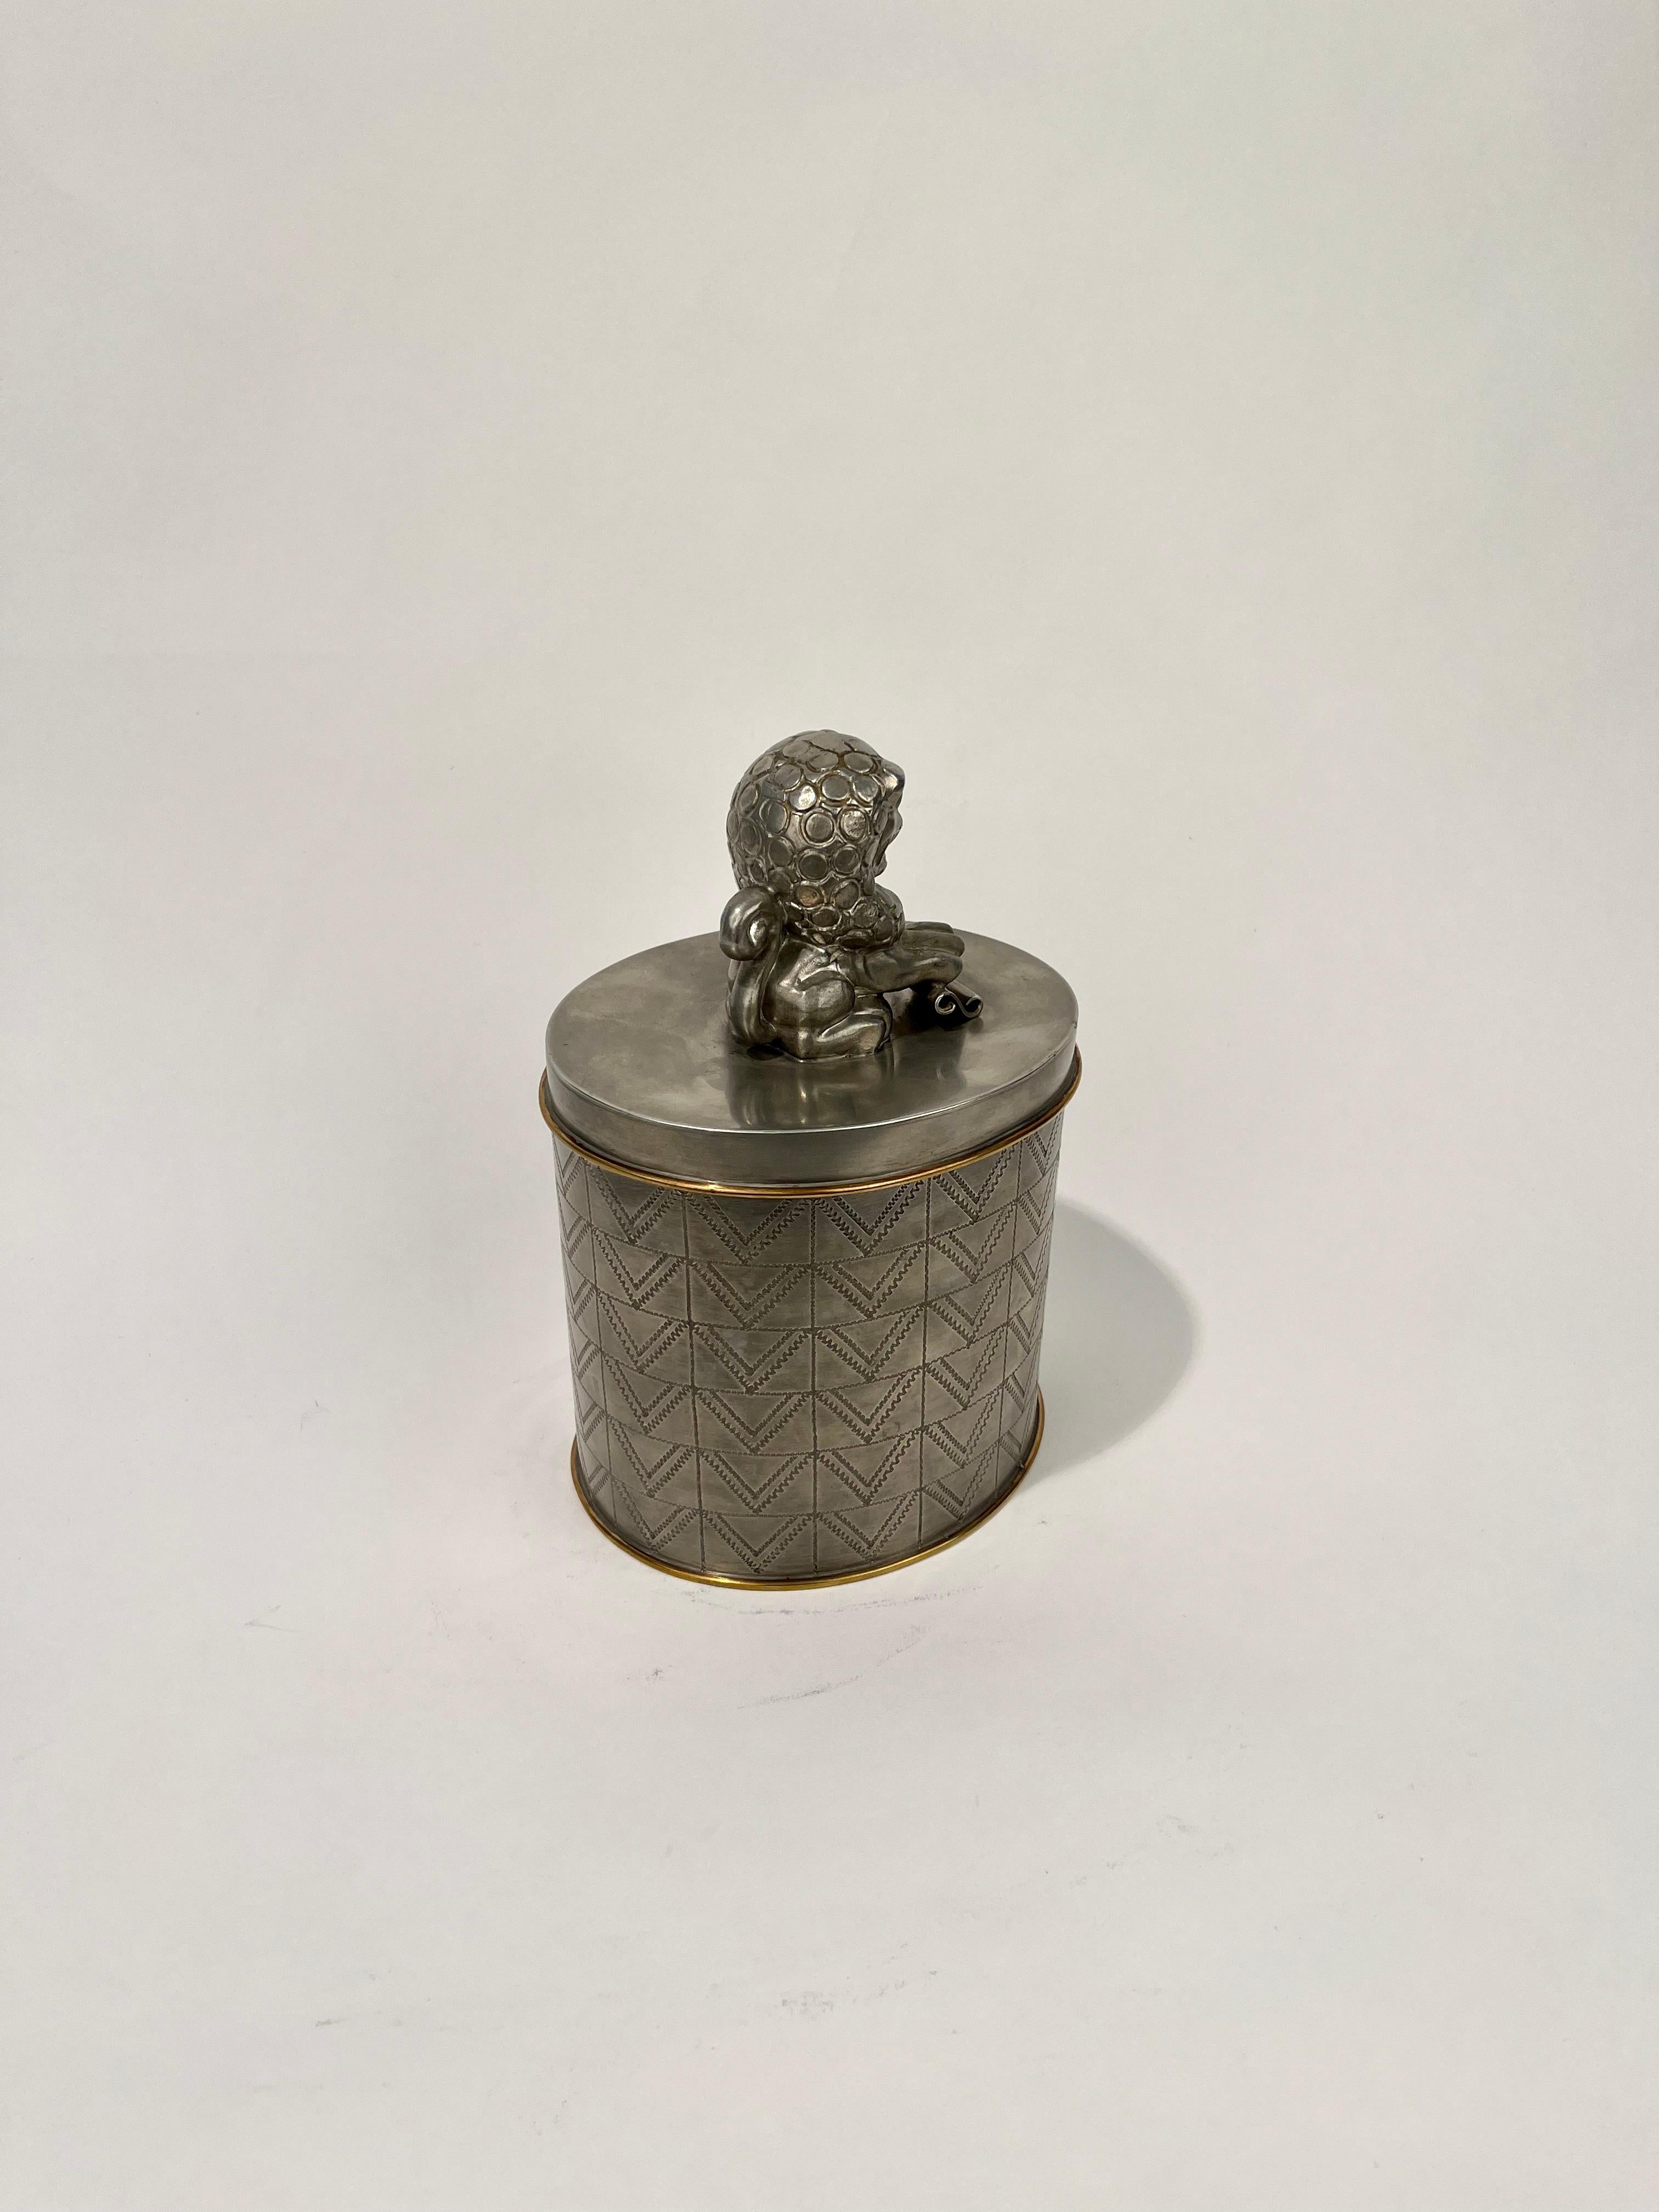 Anna Petrus a conçu une boîte à cigares pour Firma Svenskt Tenn 1928. Modèle 462.  

Anna Petrus était sculpteur et designer au début du 20e siècle. Après sa mort, l'œuvre d'Anna Petrus a été presque oubliée, mais ces dernières années, elle a été